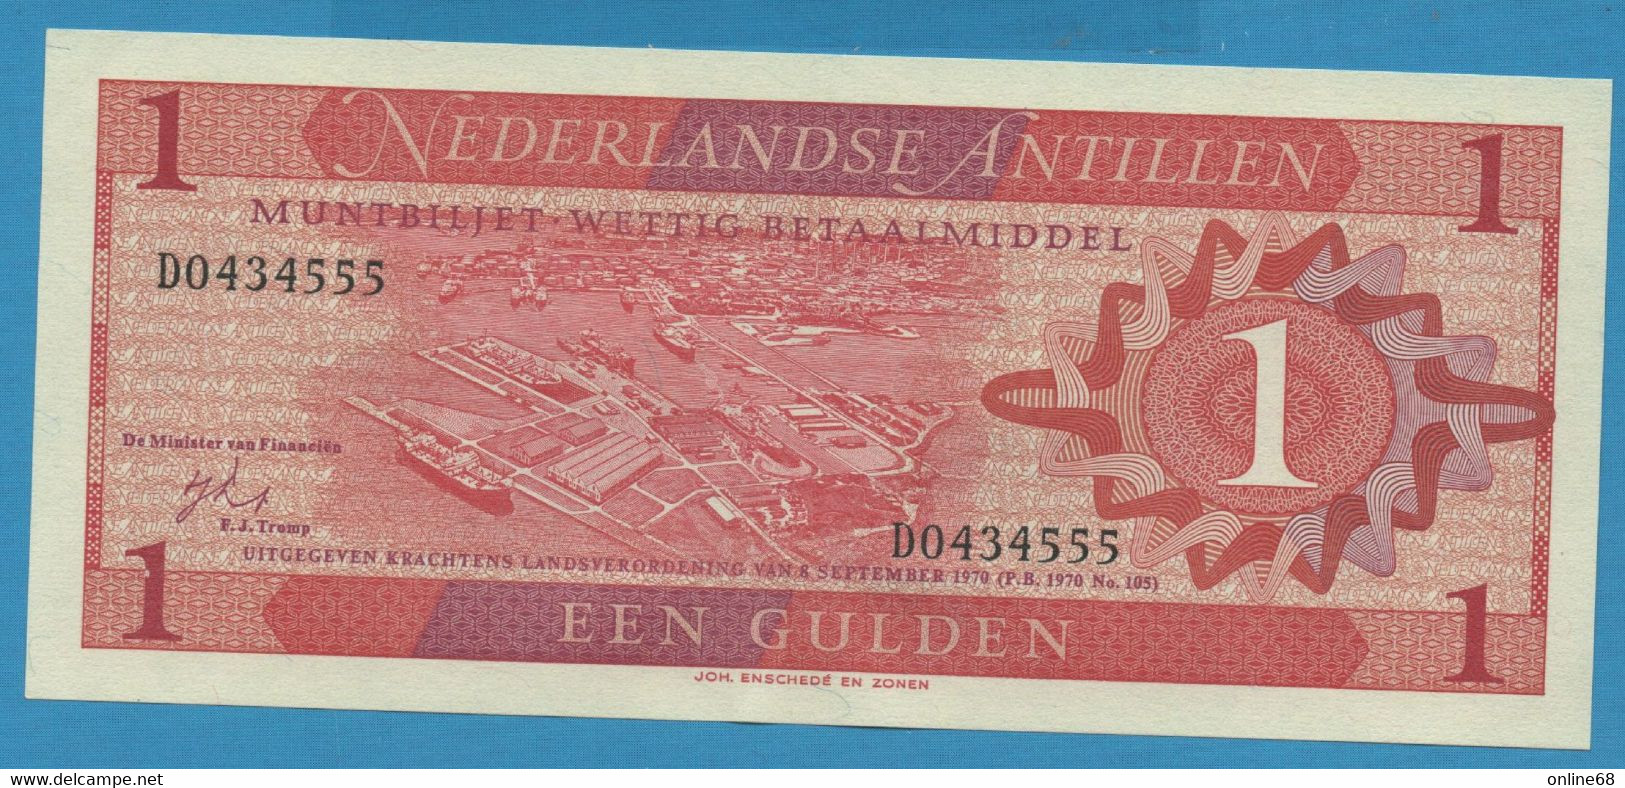 NEDERLANDSE ANTILLEN 1 GULDEN 08.09.1970 # D0434555 P# 20 Willemstad Curaçao - Antilles Néerlandaises (...-1986)